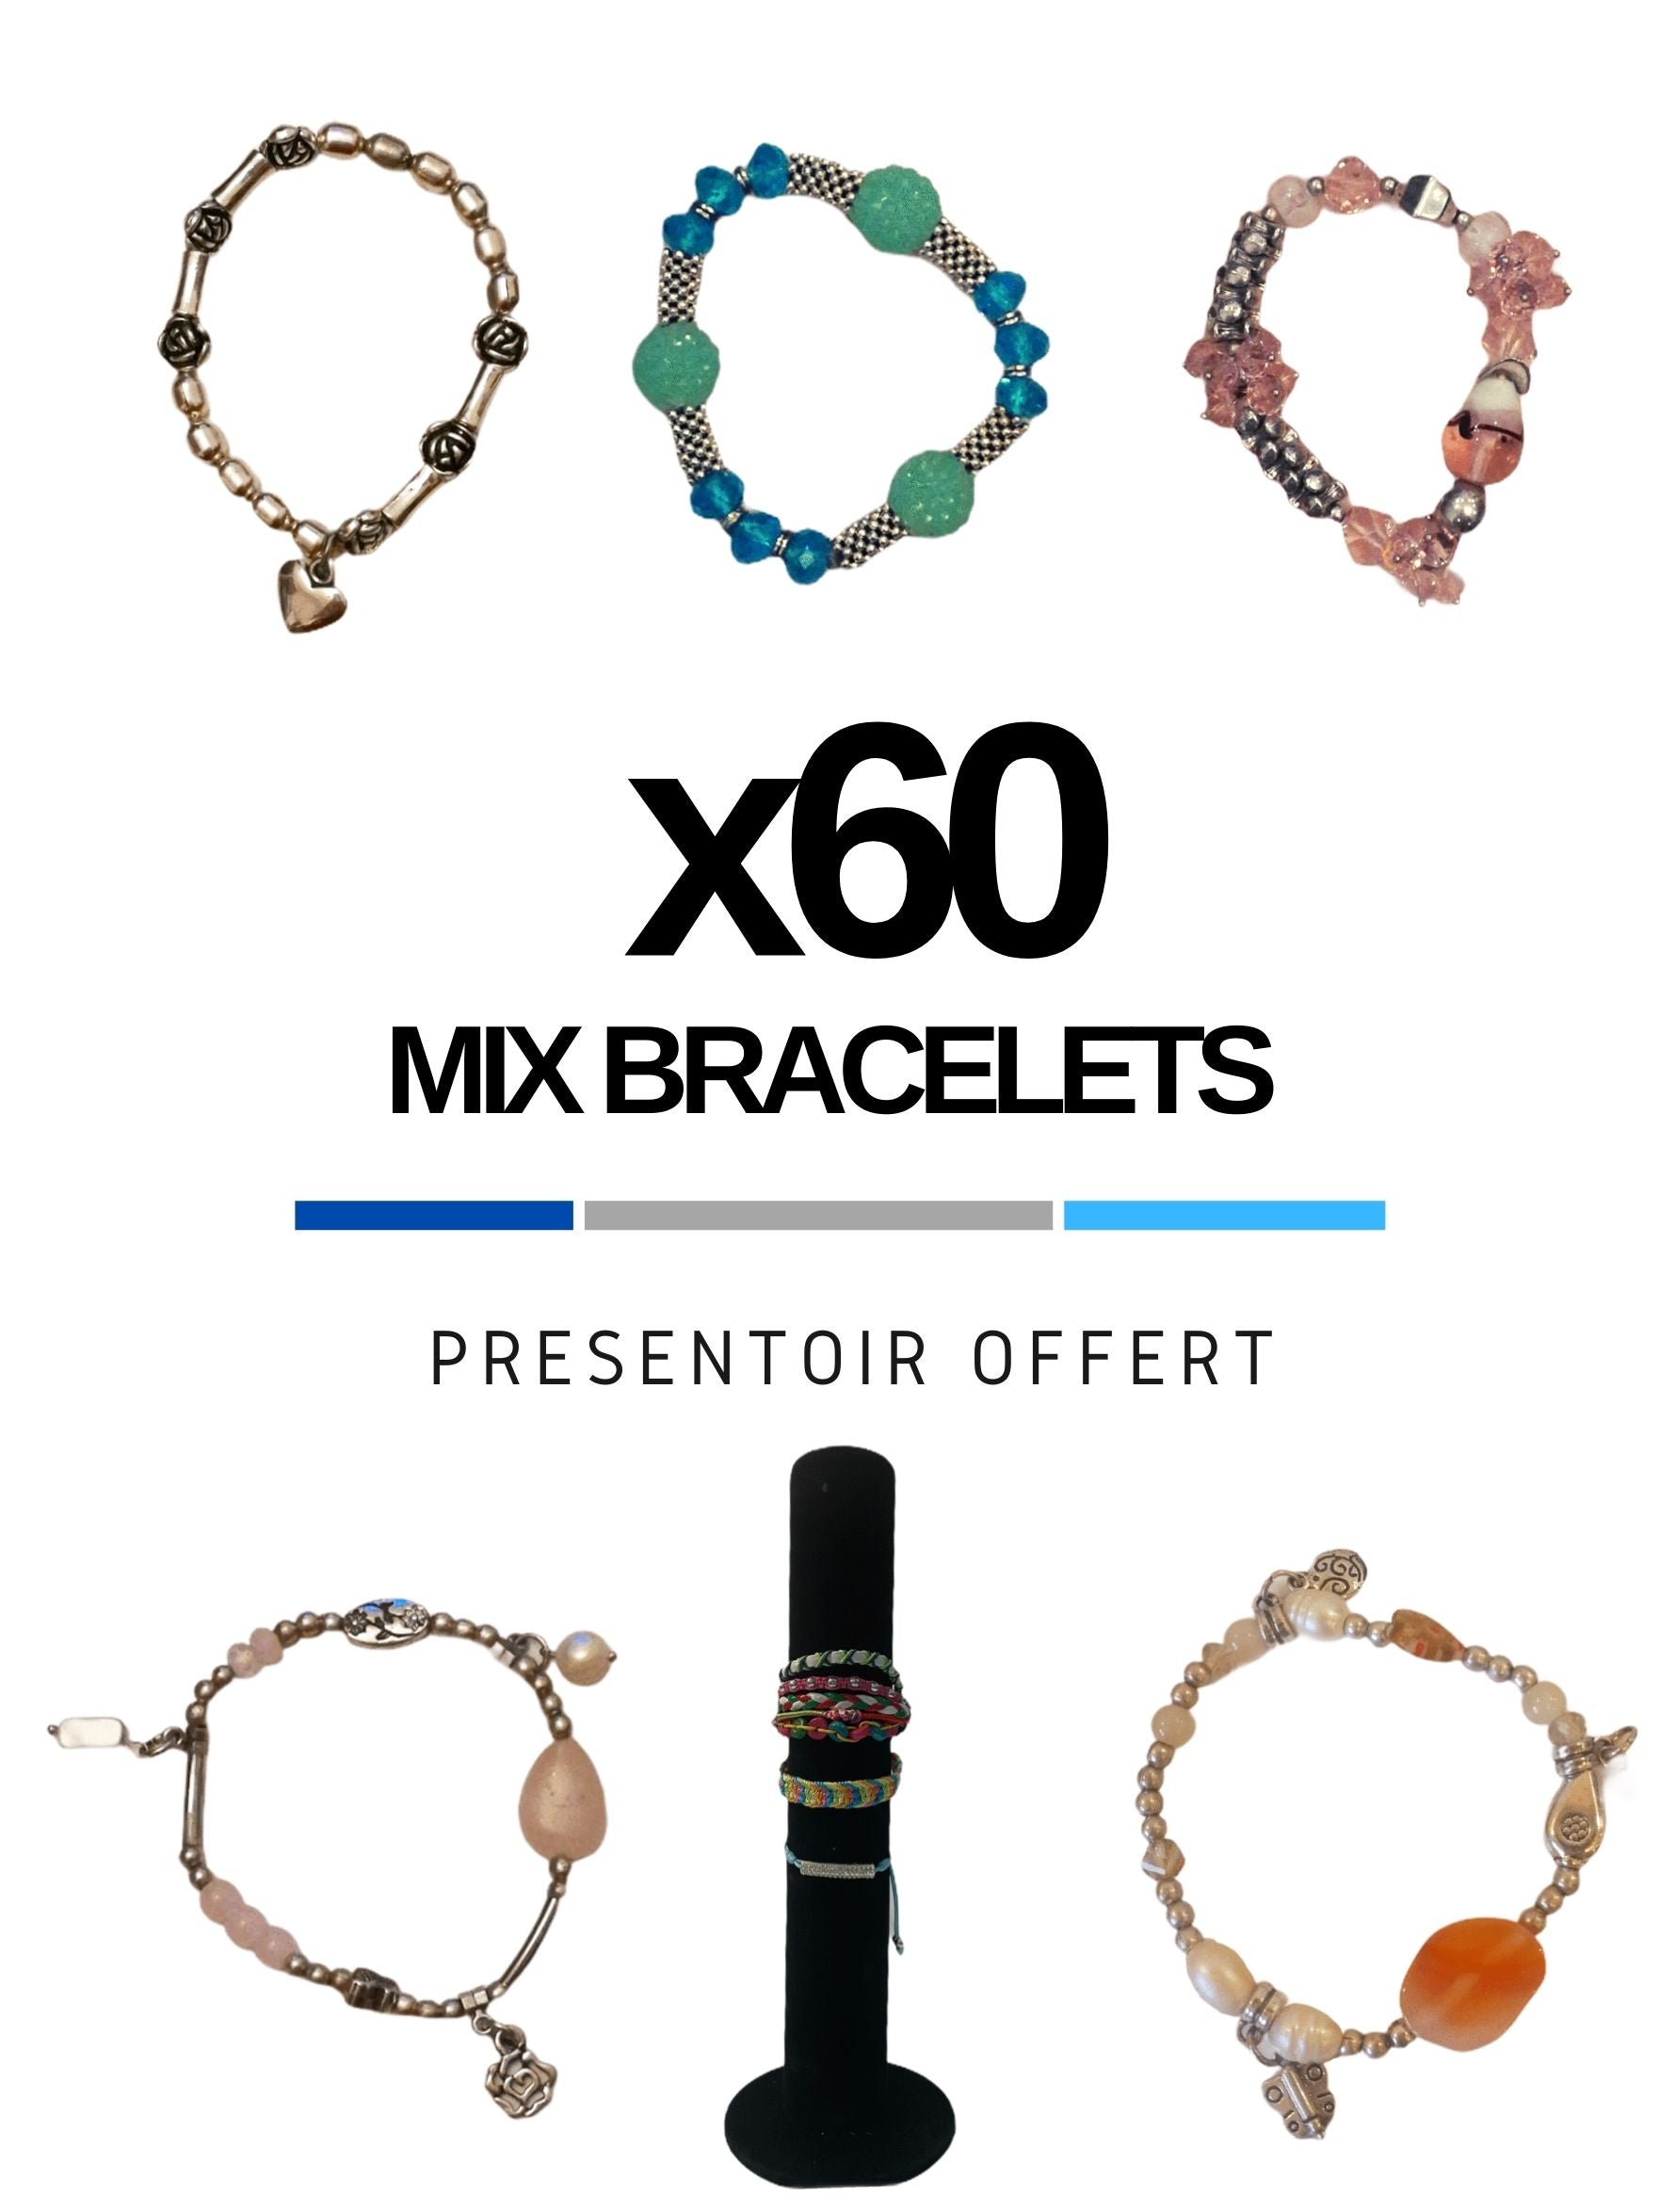 MAXI-LOT Présentoir offert + Mix bracelets (x60)